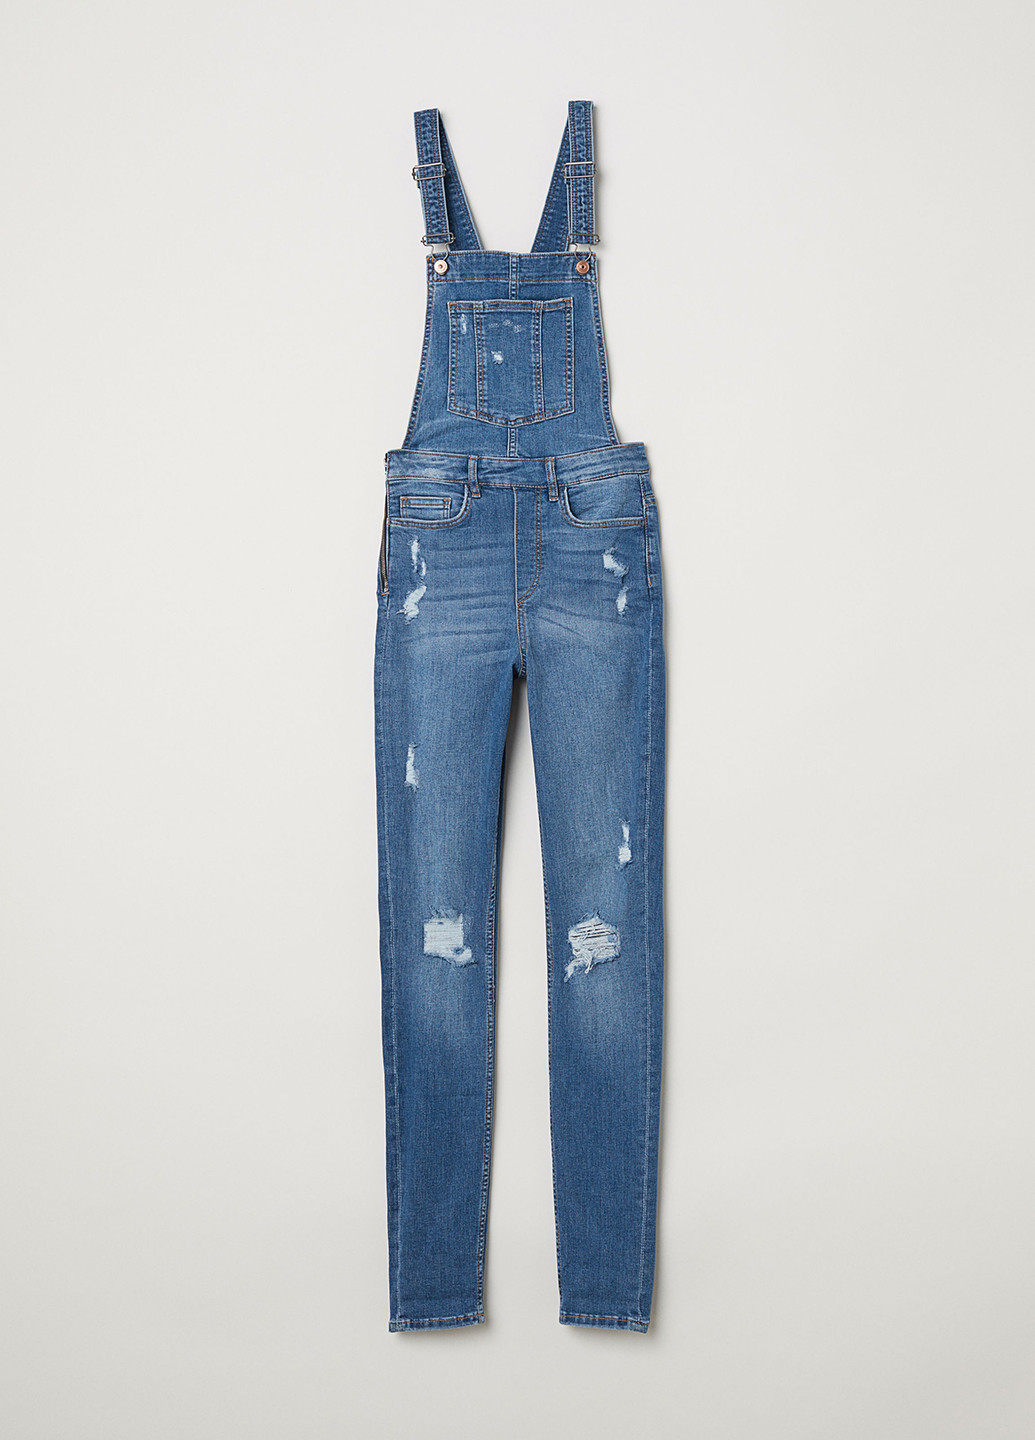 Комбінезон H&M комбінезон-брюки синій джинсовий